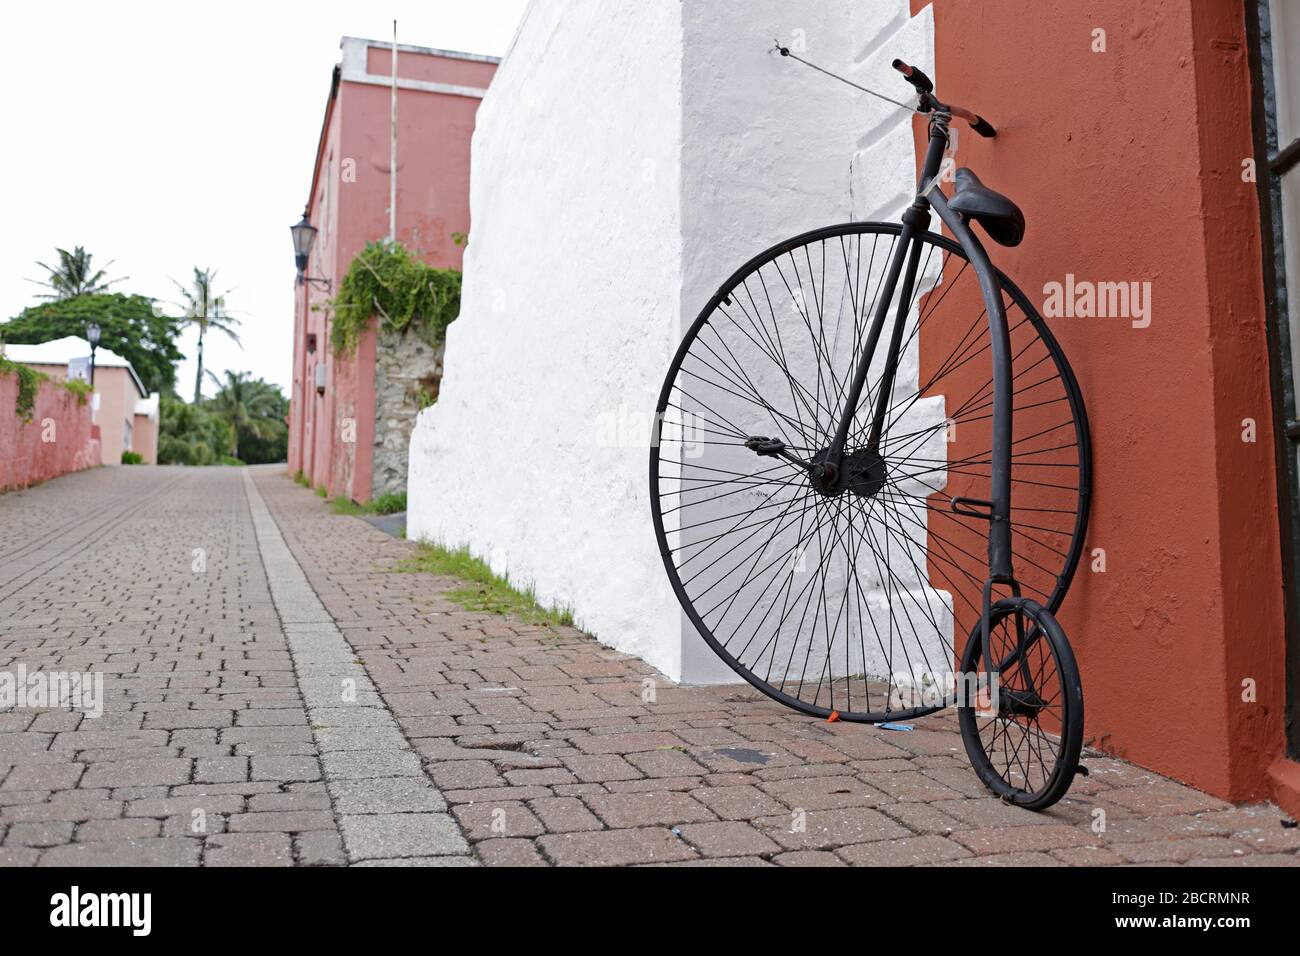 Bicicletta d'epoca con una ruota grande e una piccola. Il penny-farthing, anche conosciuto come una ruota alta, un carriero alto, la prima macchina da essere chiamata una bicicletta. Foto Stock